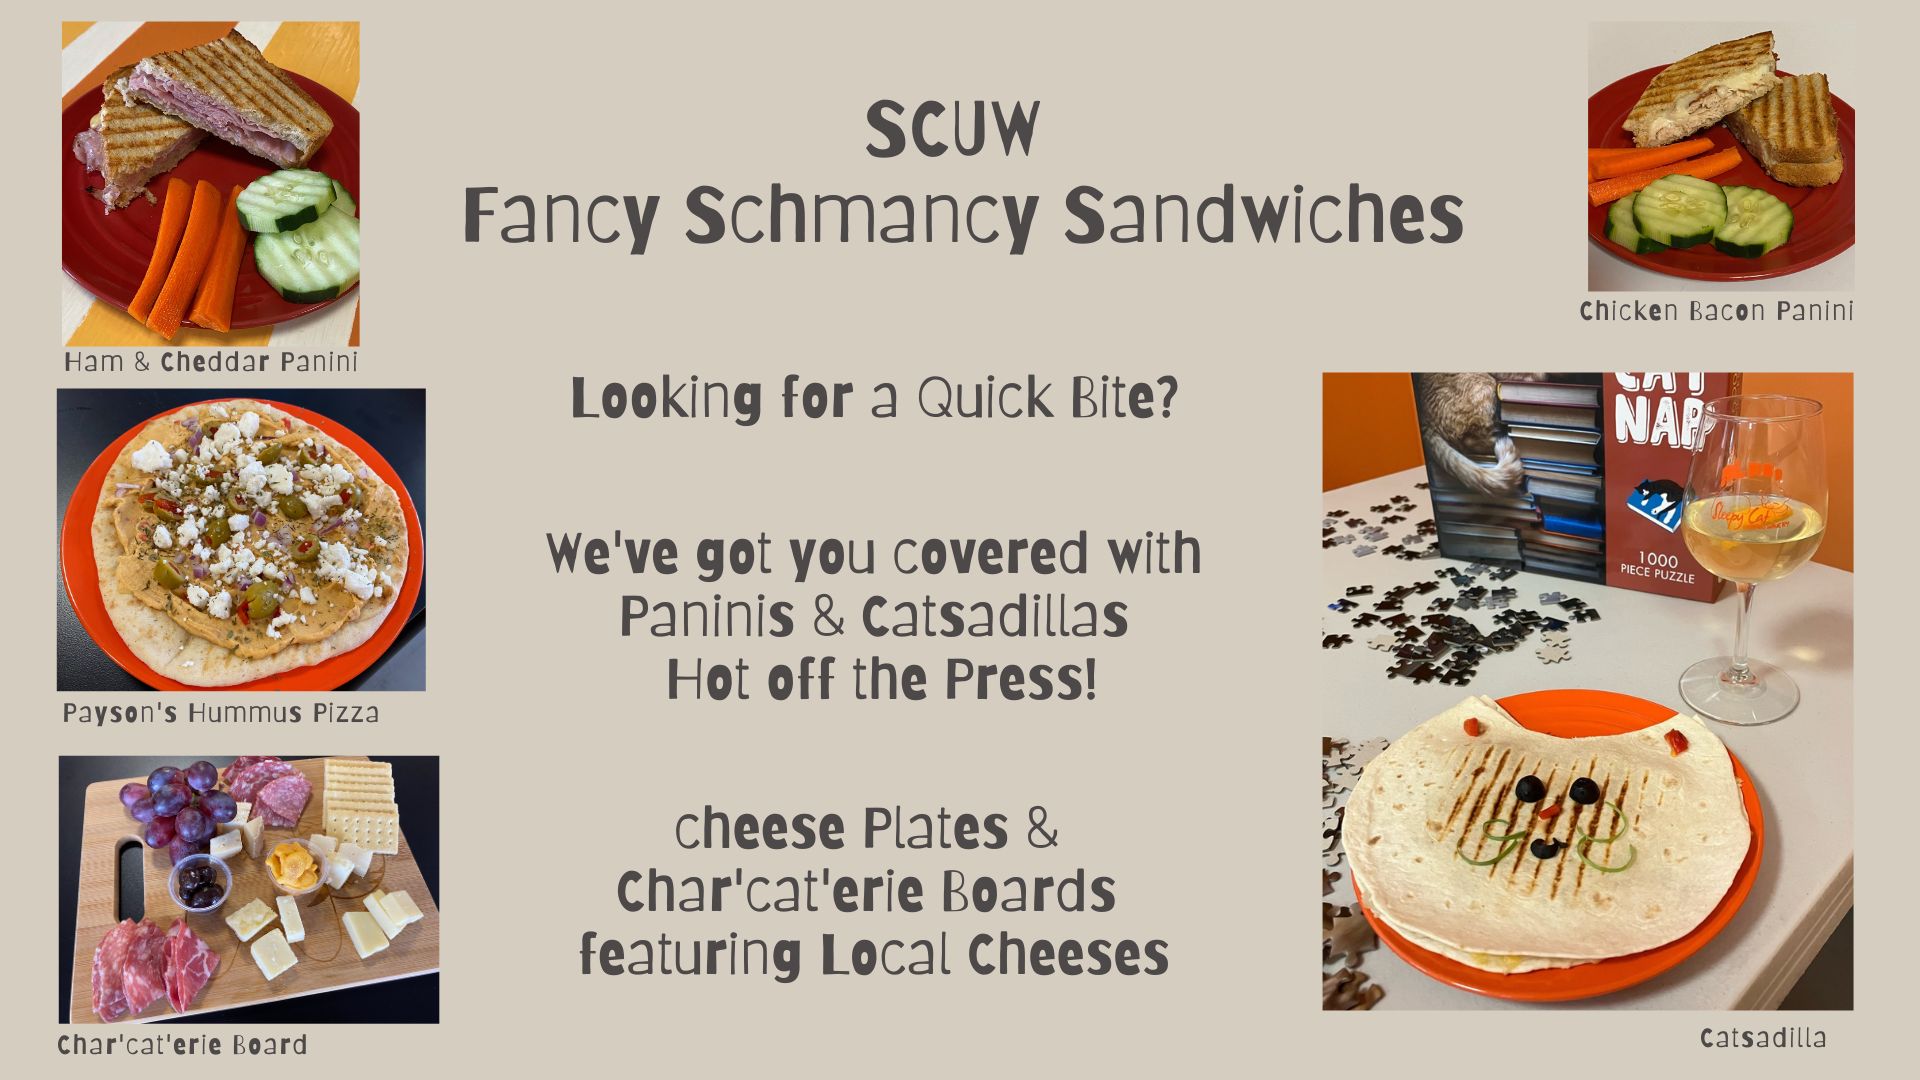 SCUW Fancy Schmancy Sandwiches